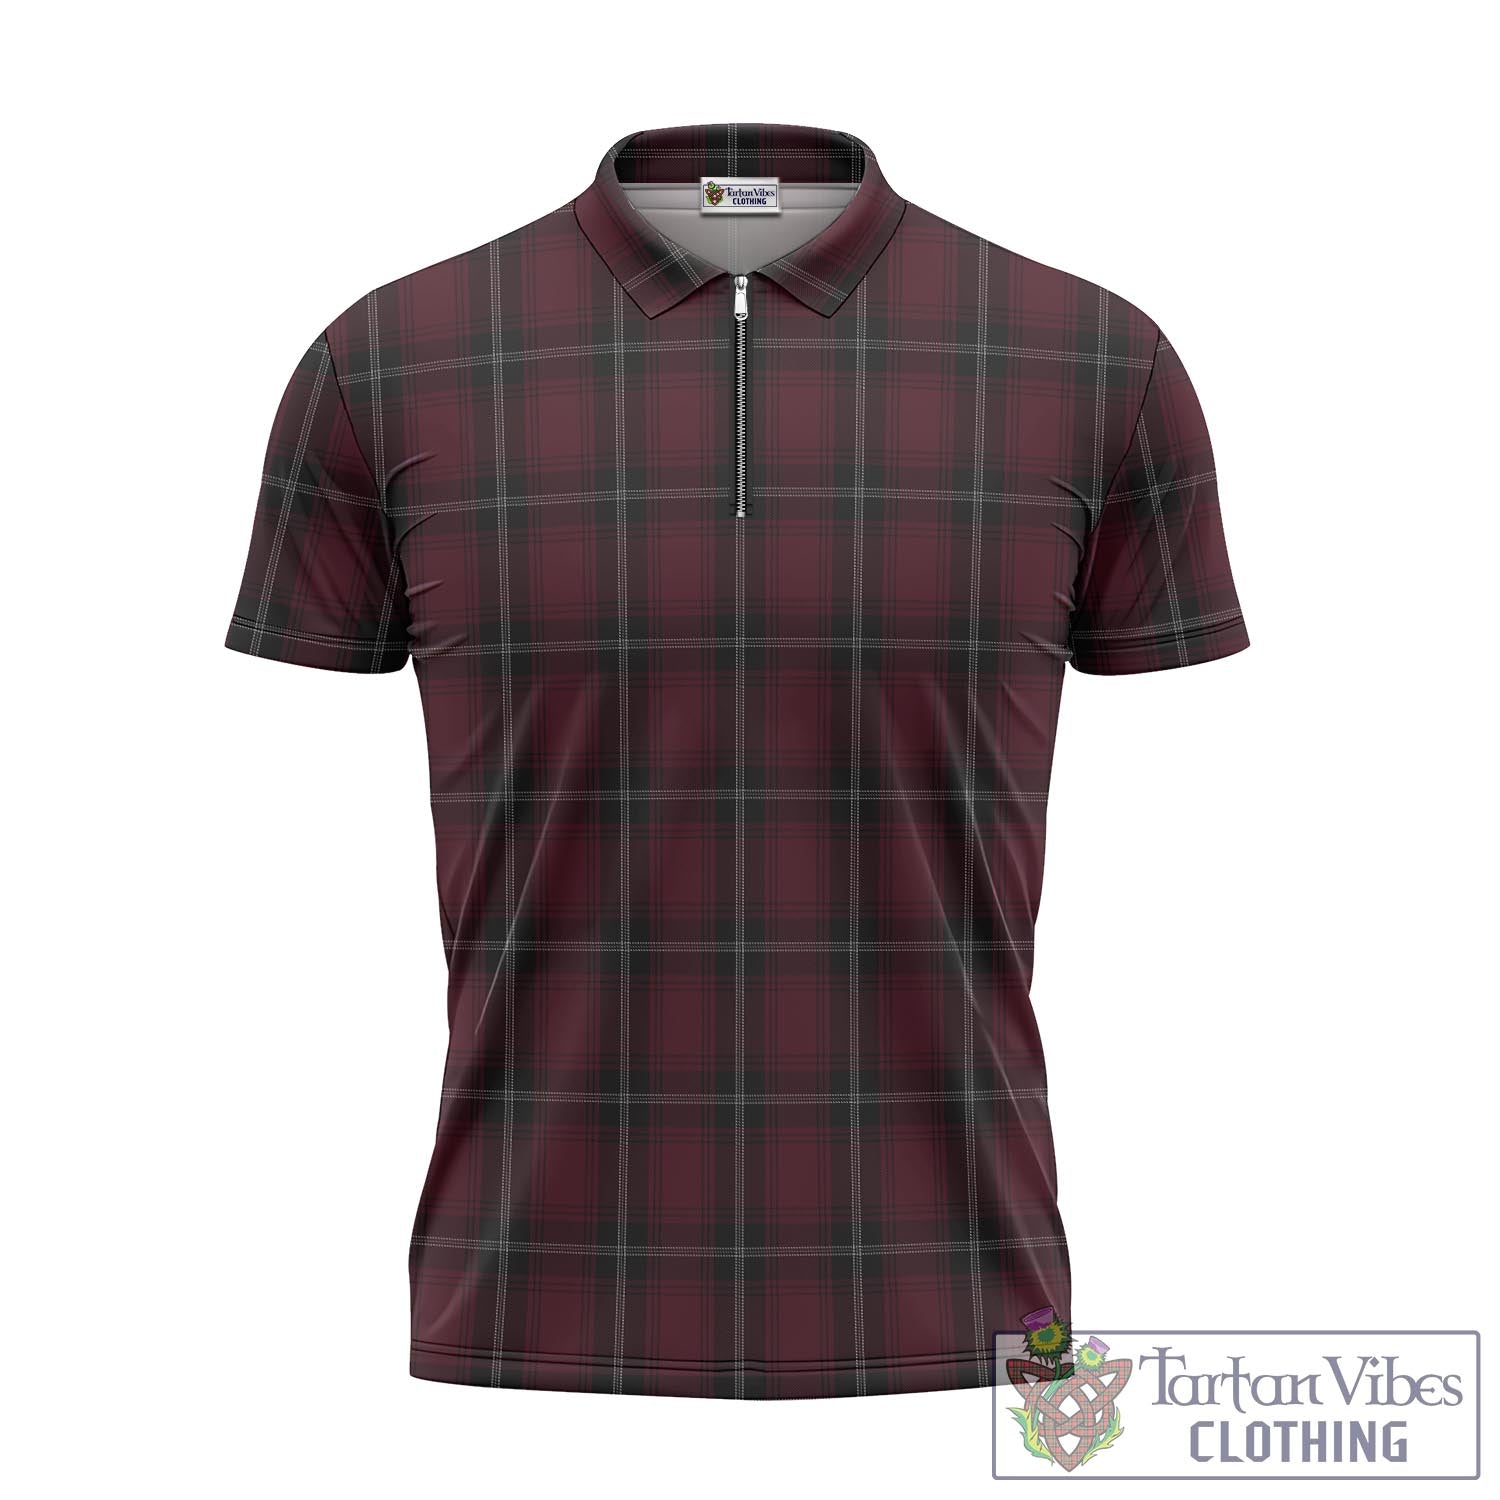 Tartan Vibes Clothing Llewellen of Wales Tartan Zipper Polo Shirt